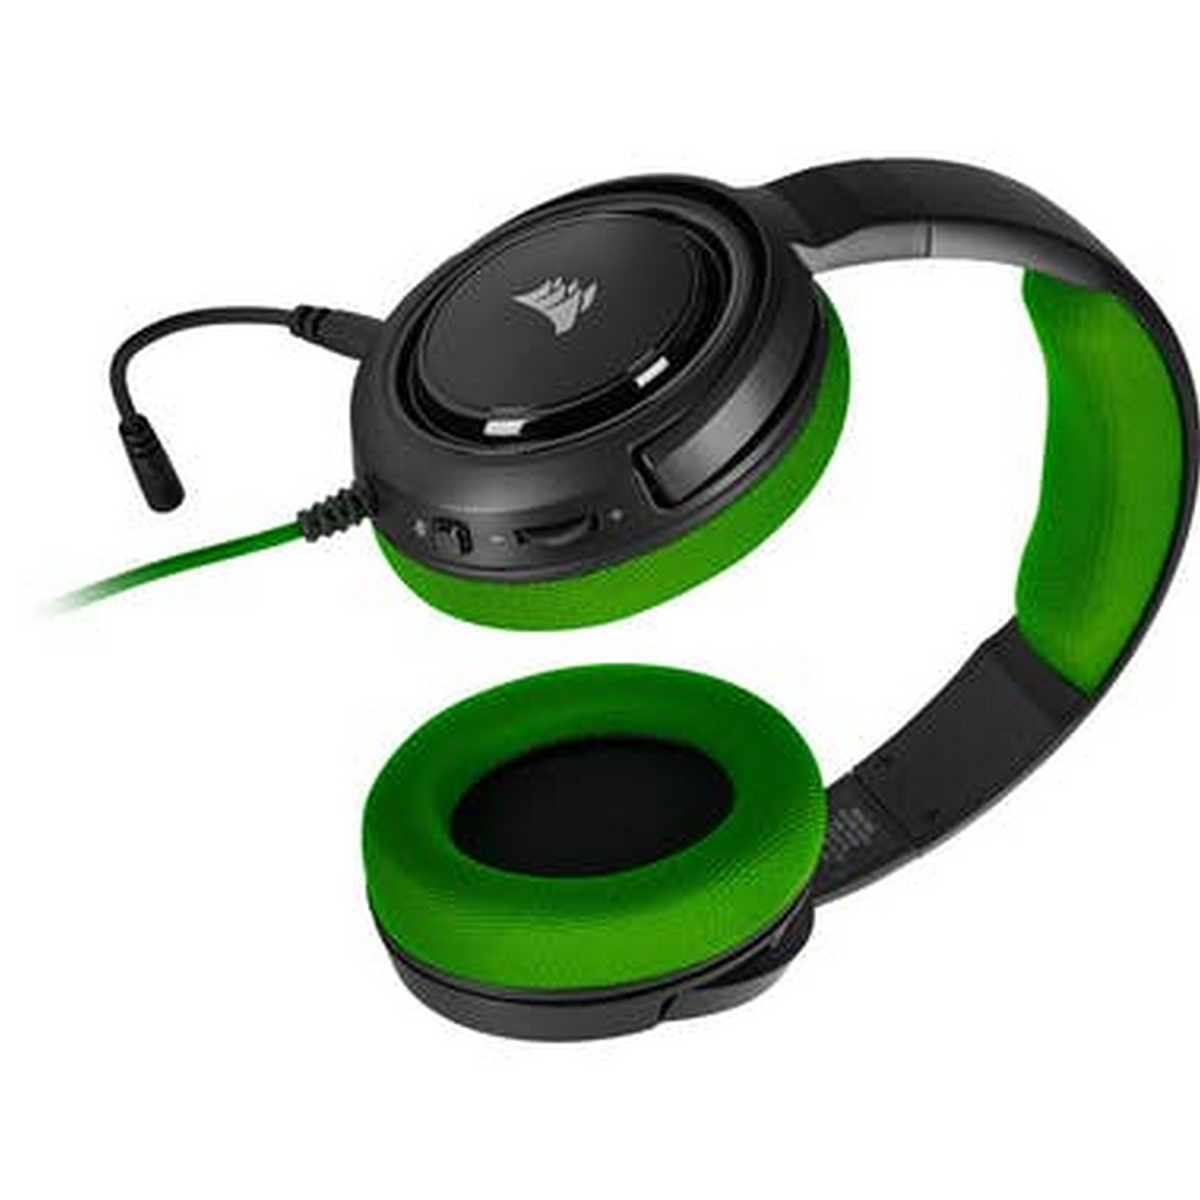 CORSAIR Gaming STEREO Over-ear HEADSET HS35 CA-9011197-EU Headset GREEN, Schwarz/Grün